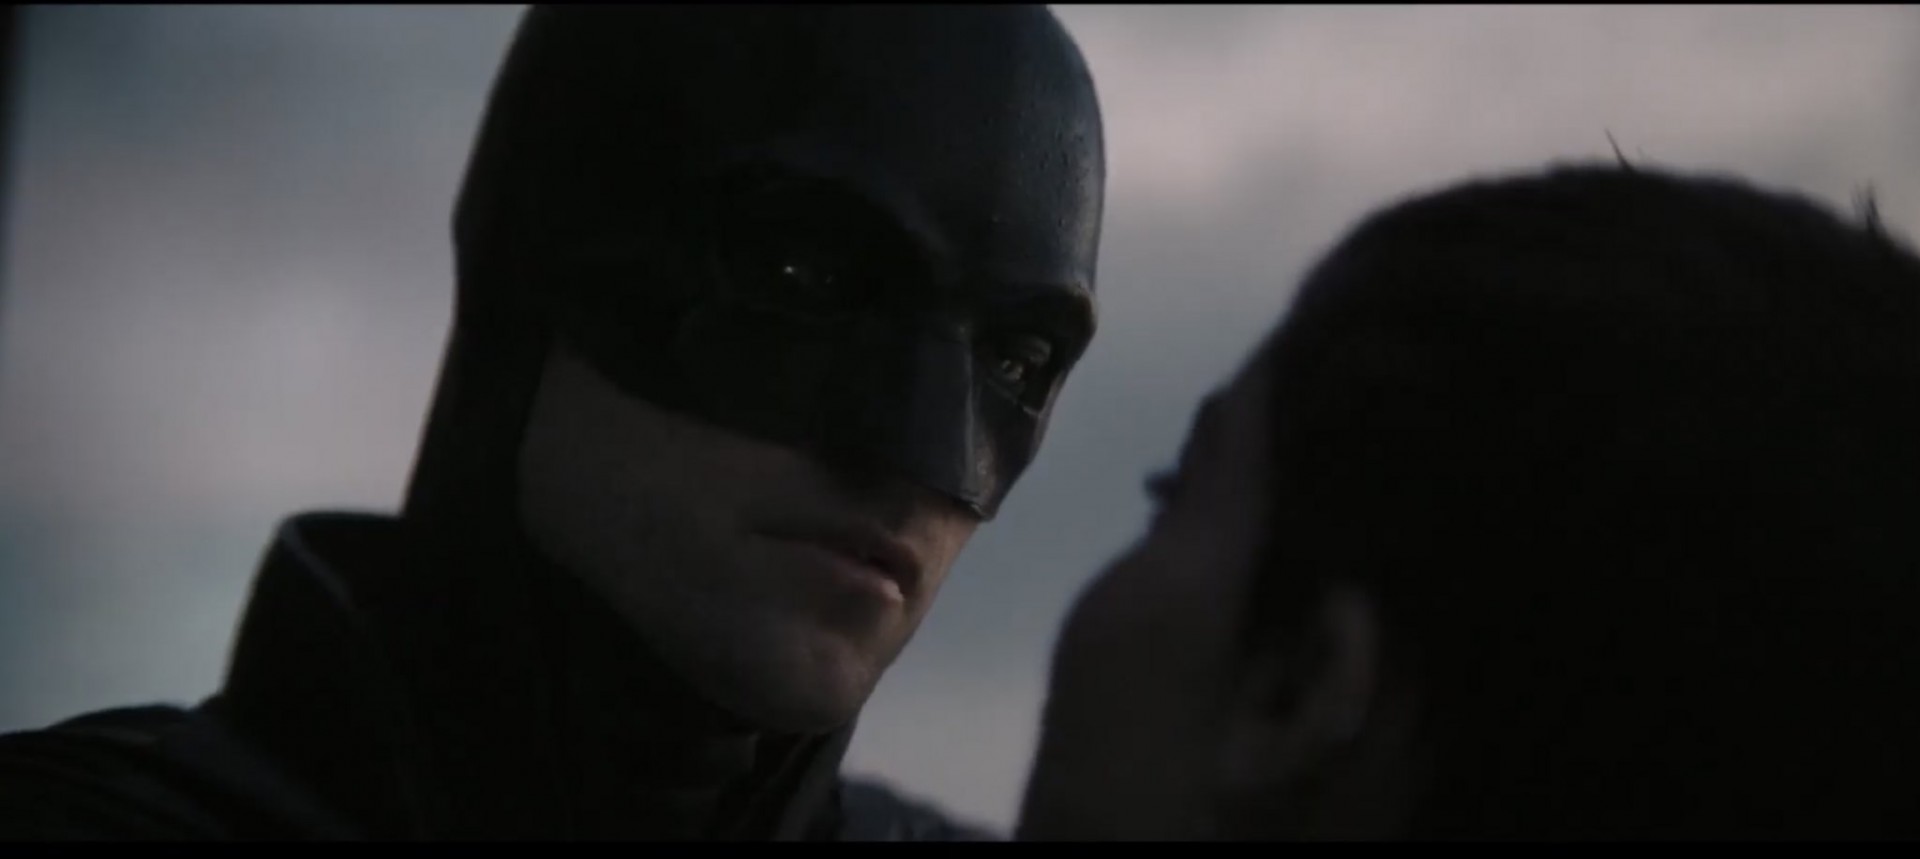 Поради улогата во Бетмен, Роберт Патинсон потполно се транформираше: Во новиот трејлер сите гледаат во Зои Кравиц